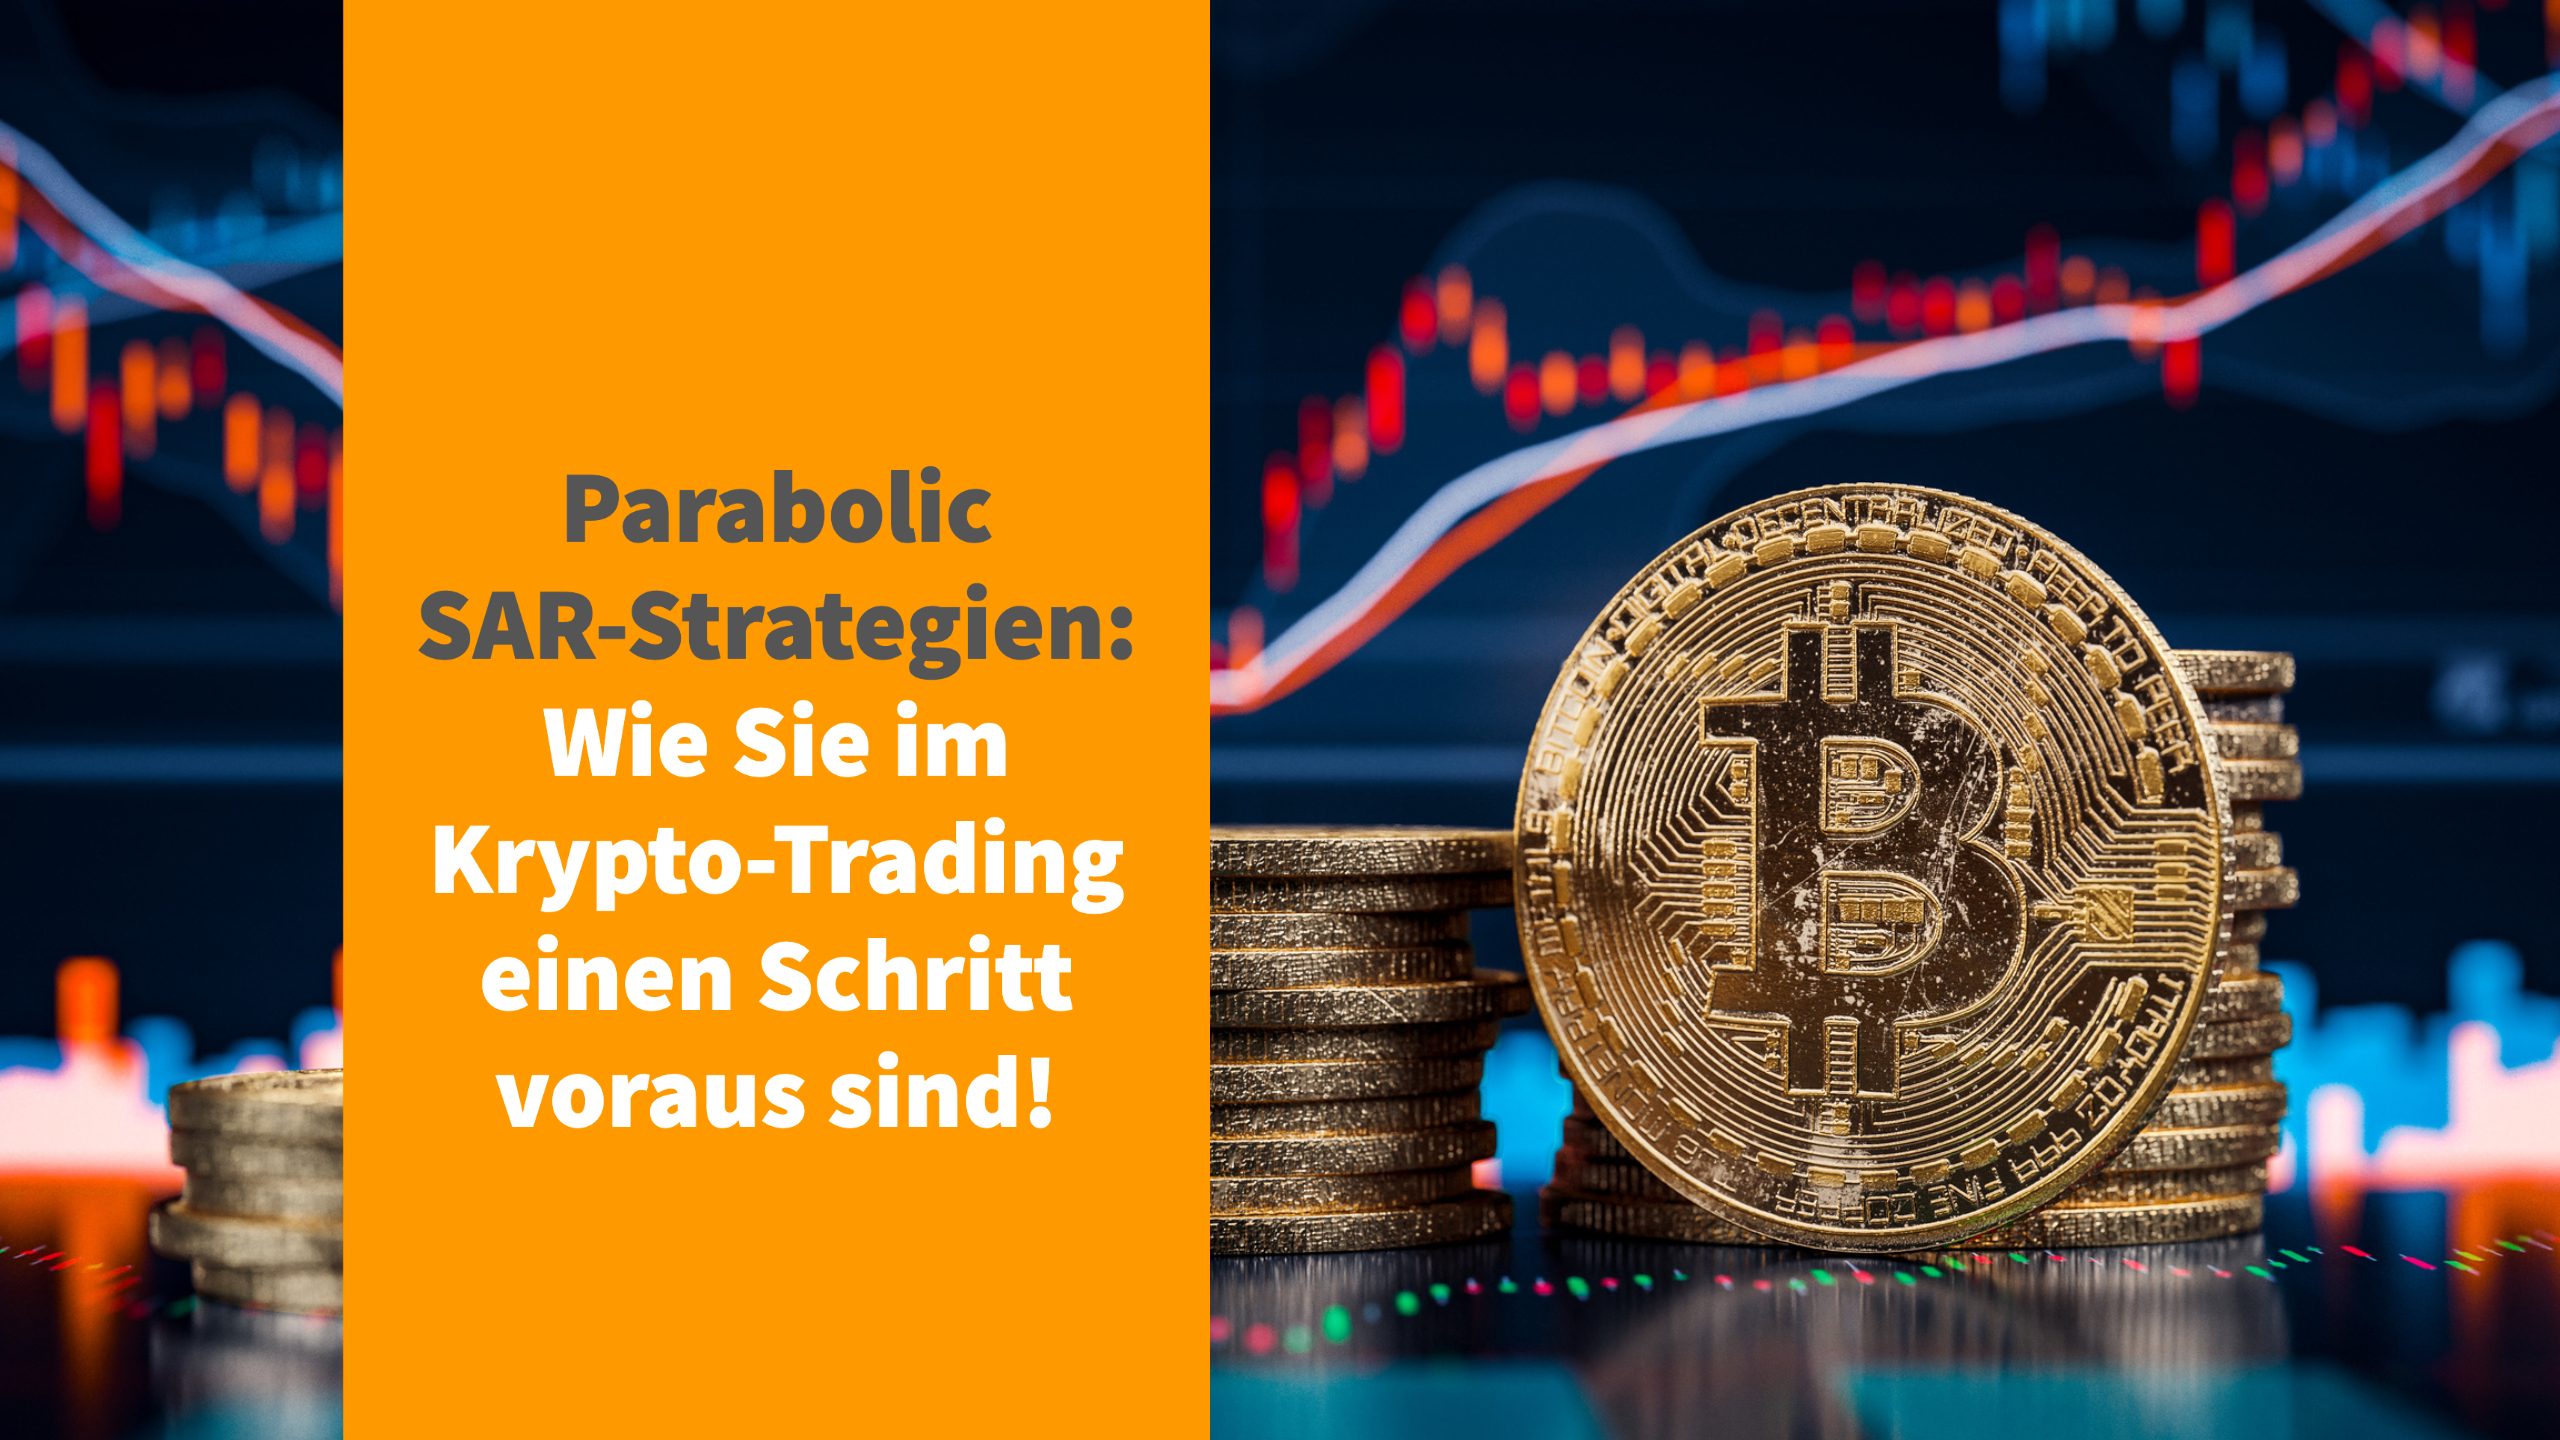 Parabolic SAR-Strategien: Wie Sie im Krypto-Trading einen Schritt voraus sind!